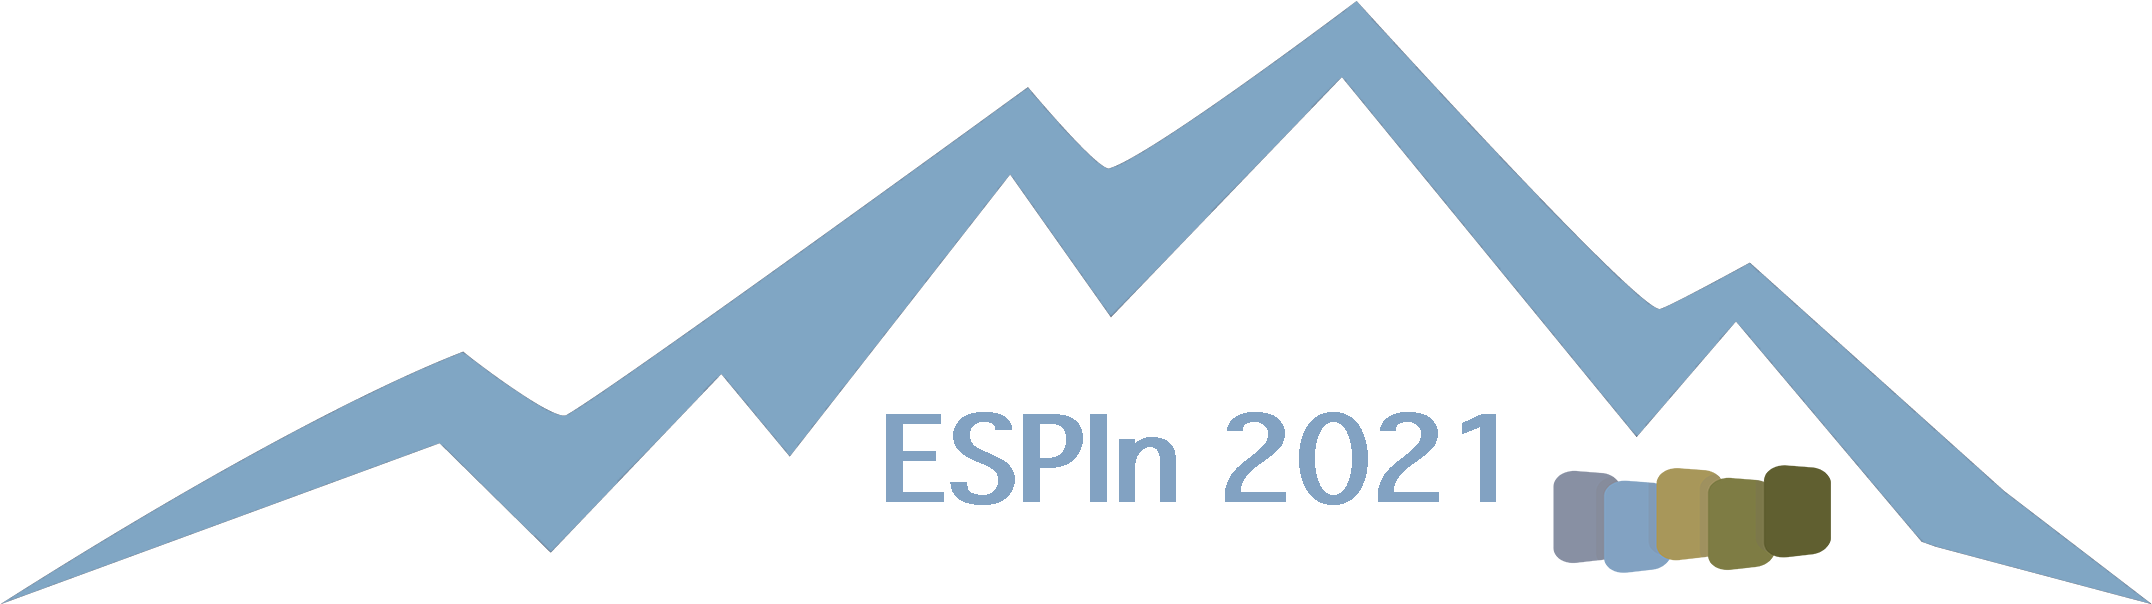 ESPIn logo